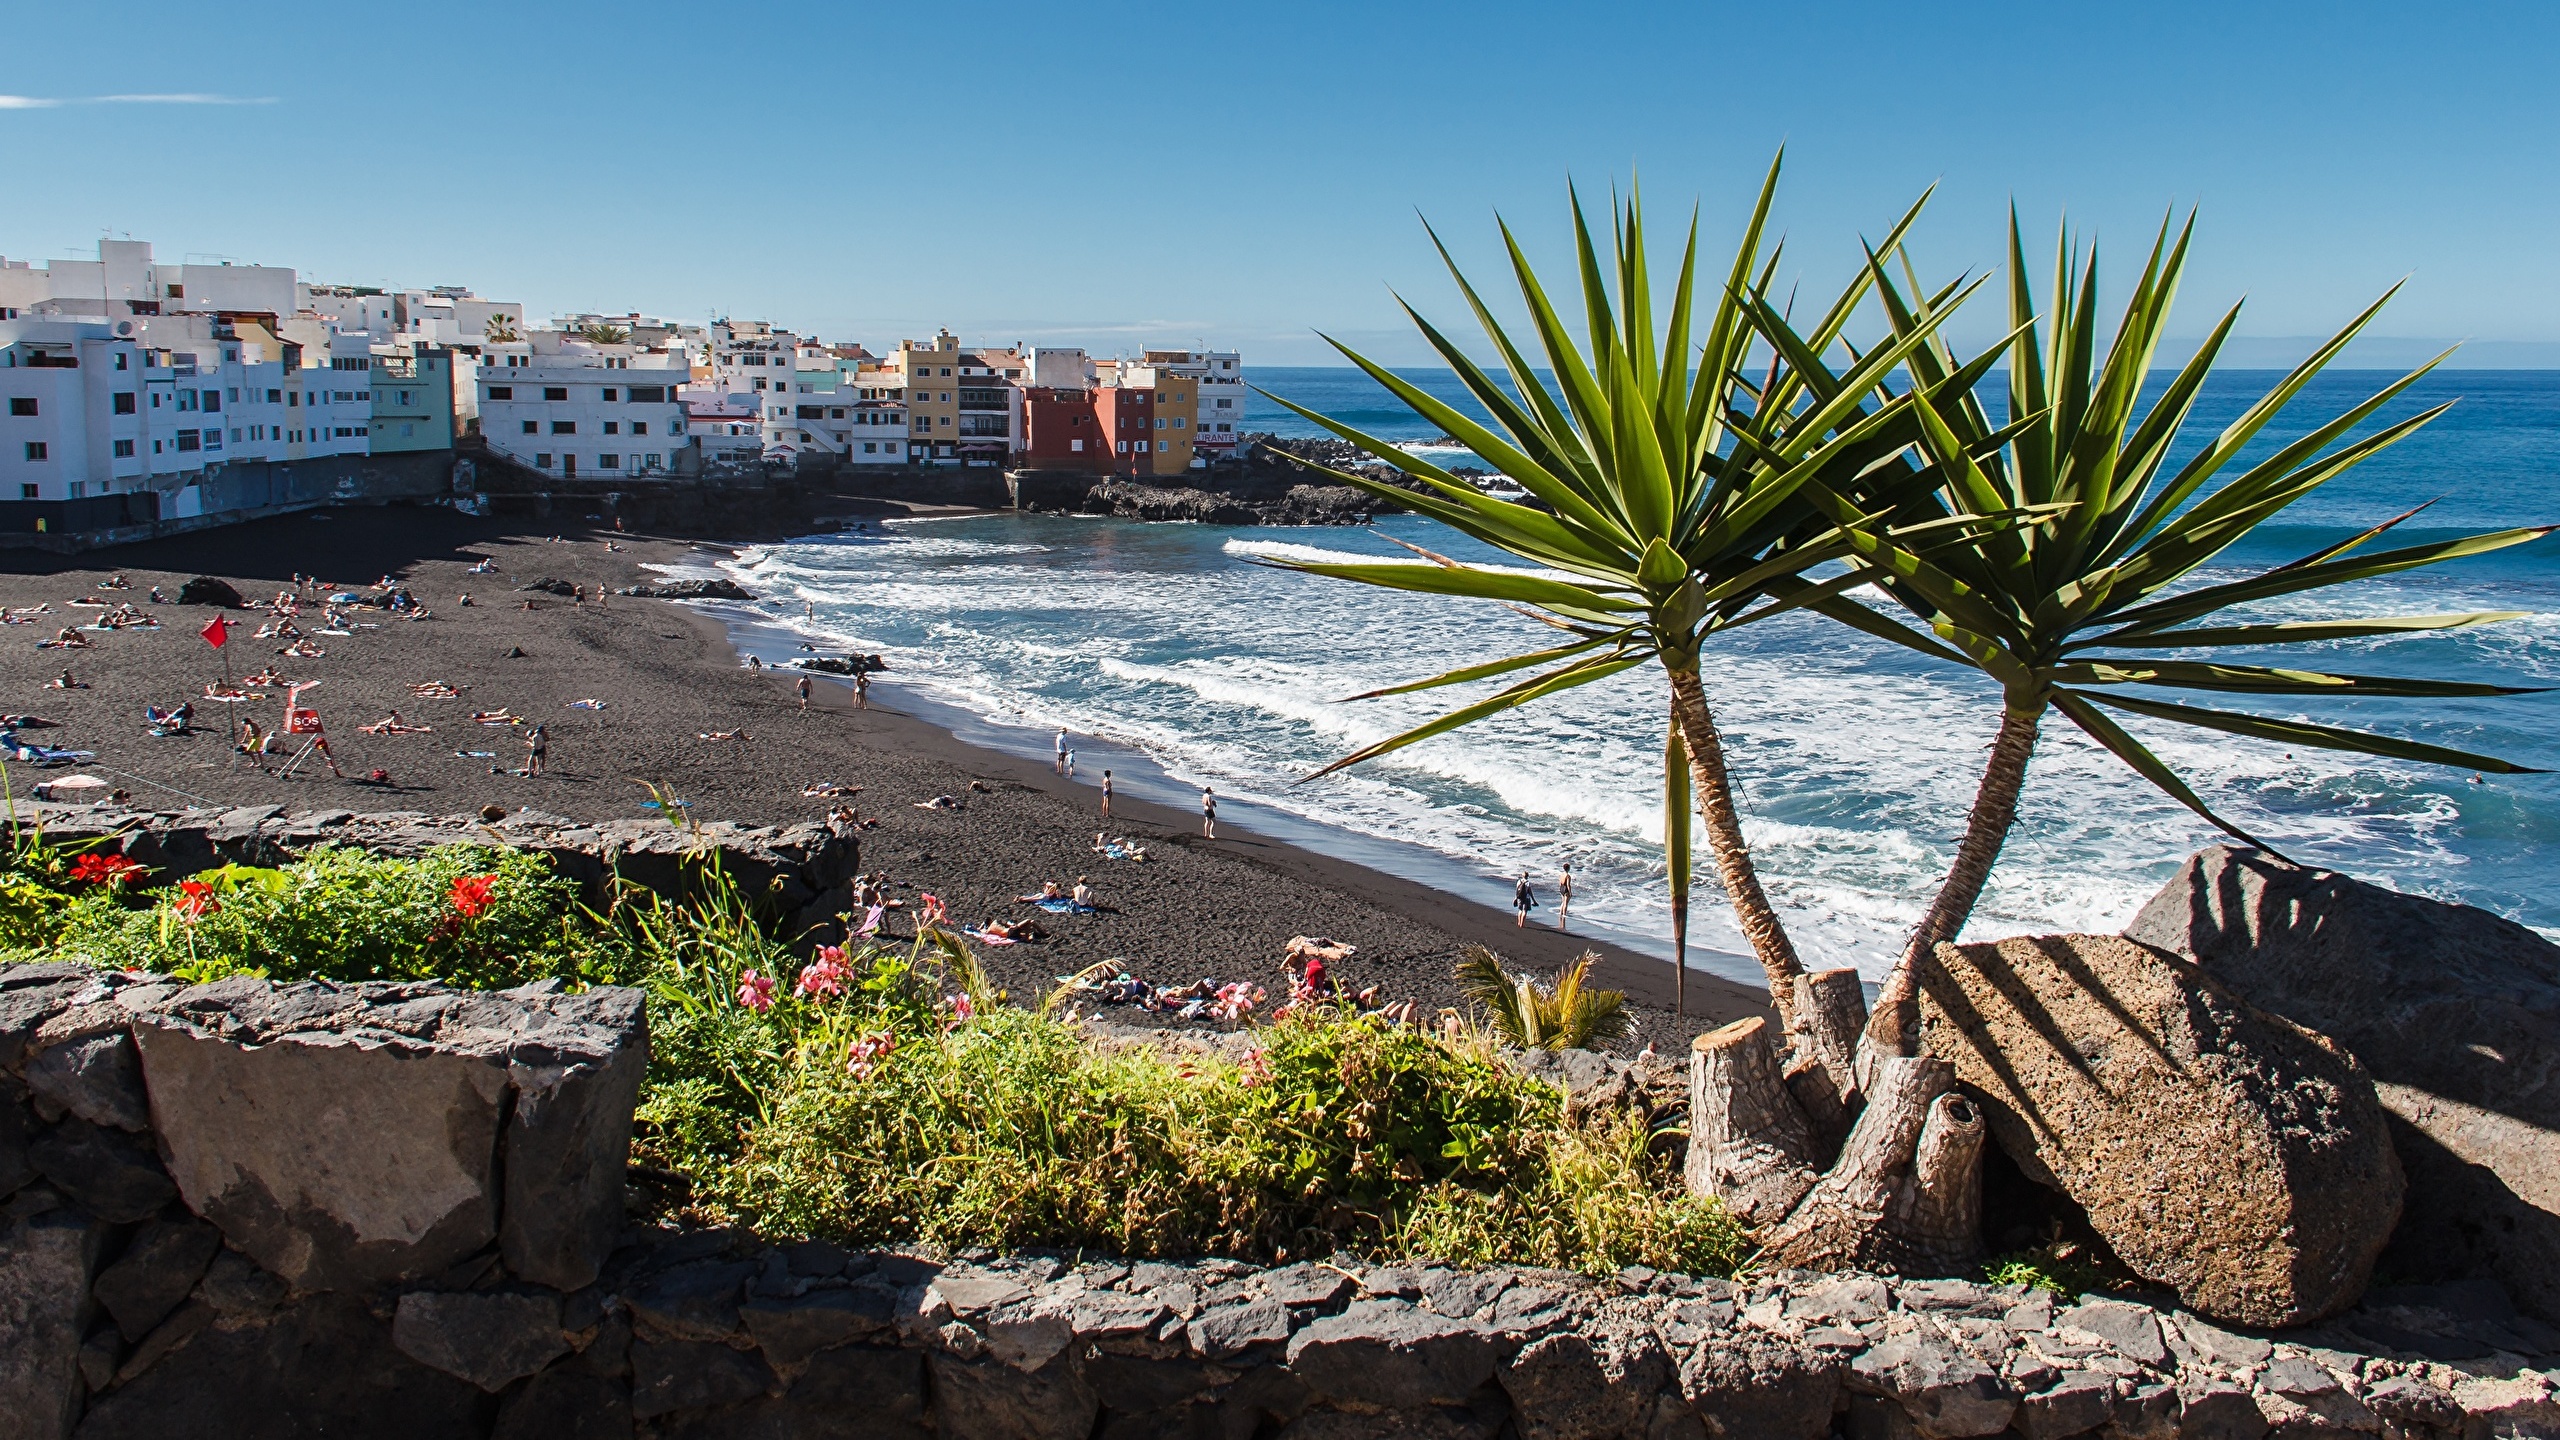 壁紙 2560x1440 スペイン リゾート 石 住宅 Tenerife Puerto De La Cruz ビーチ 都市 ダウンロード 写真